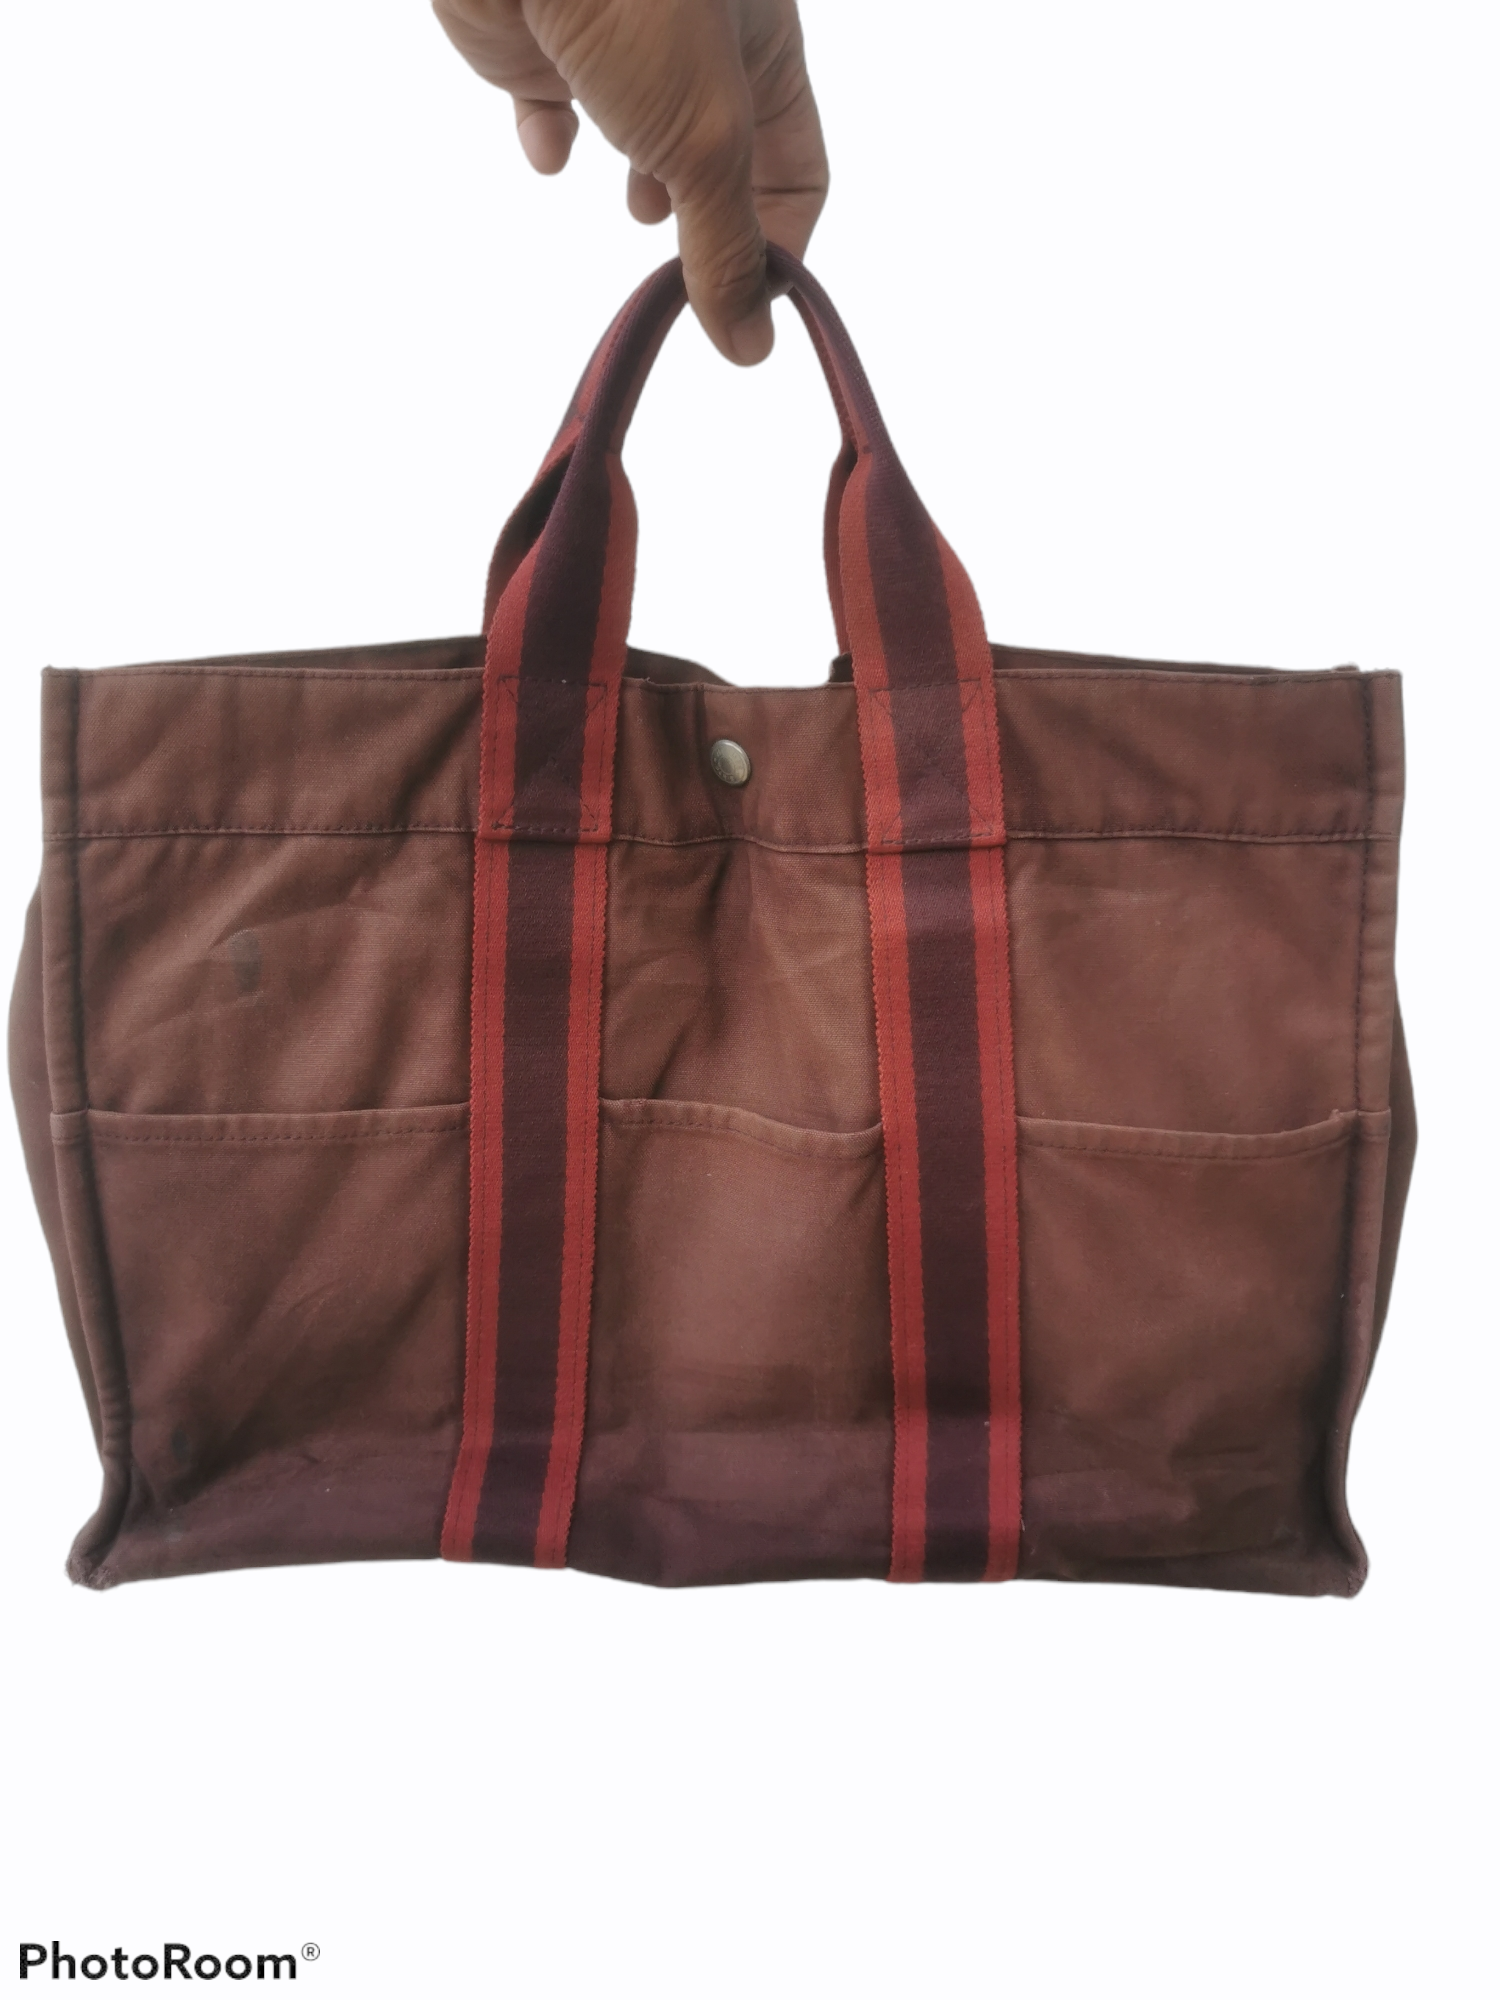 Authentic Vintage Hermes Paris Tote Bag - 1